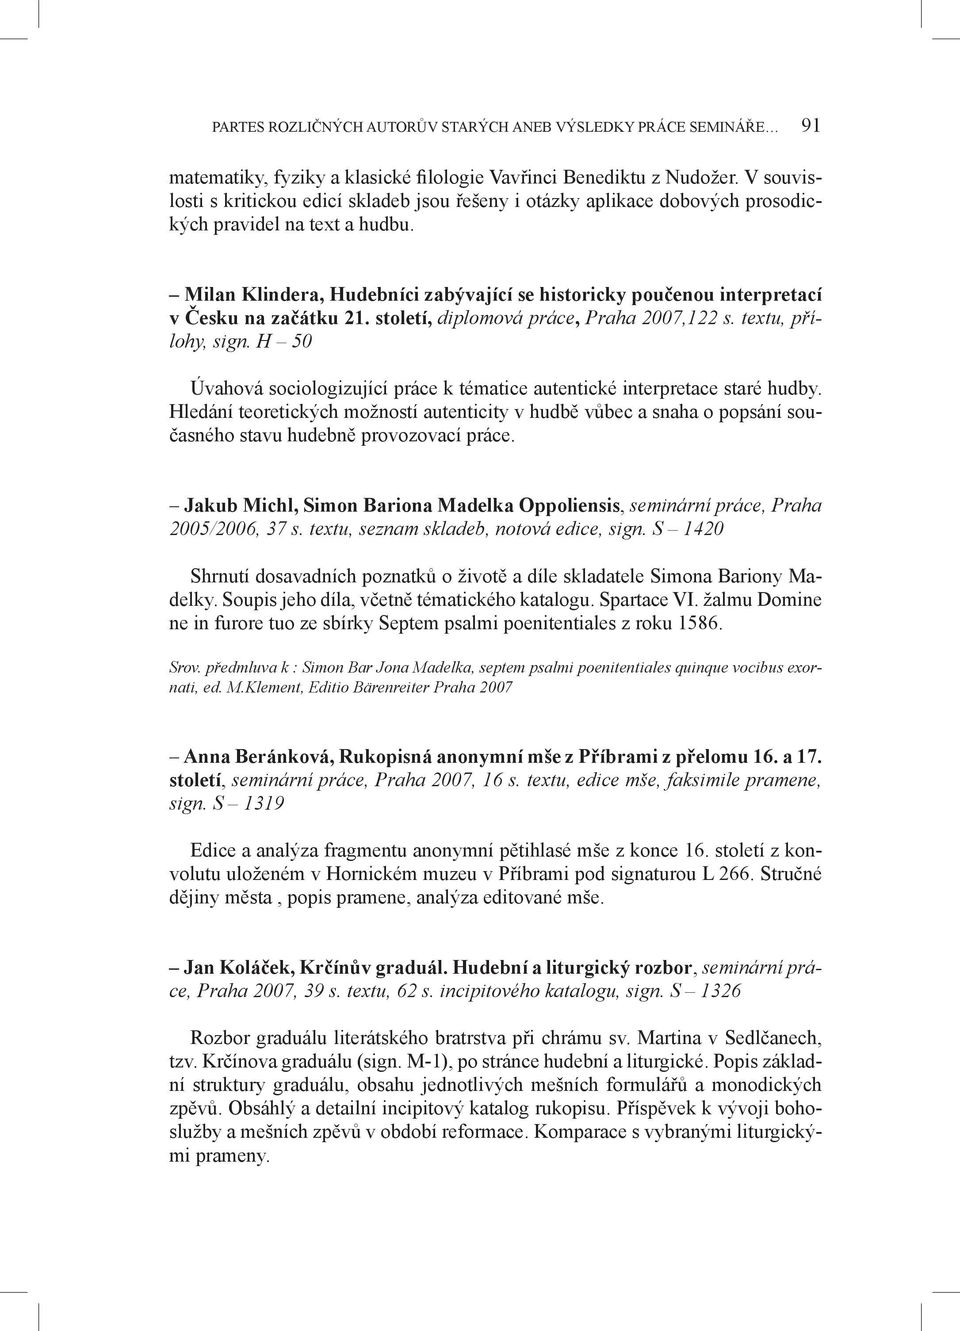 Milan Klindera, Hudebníci zabývající se historicky poučenou interpretací v Česku na začátku 21. století, diplomová práce, Praha 2007,122 s. textu, přílohy, sign.